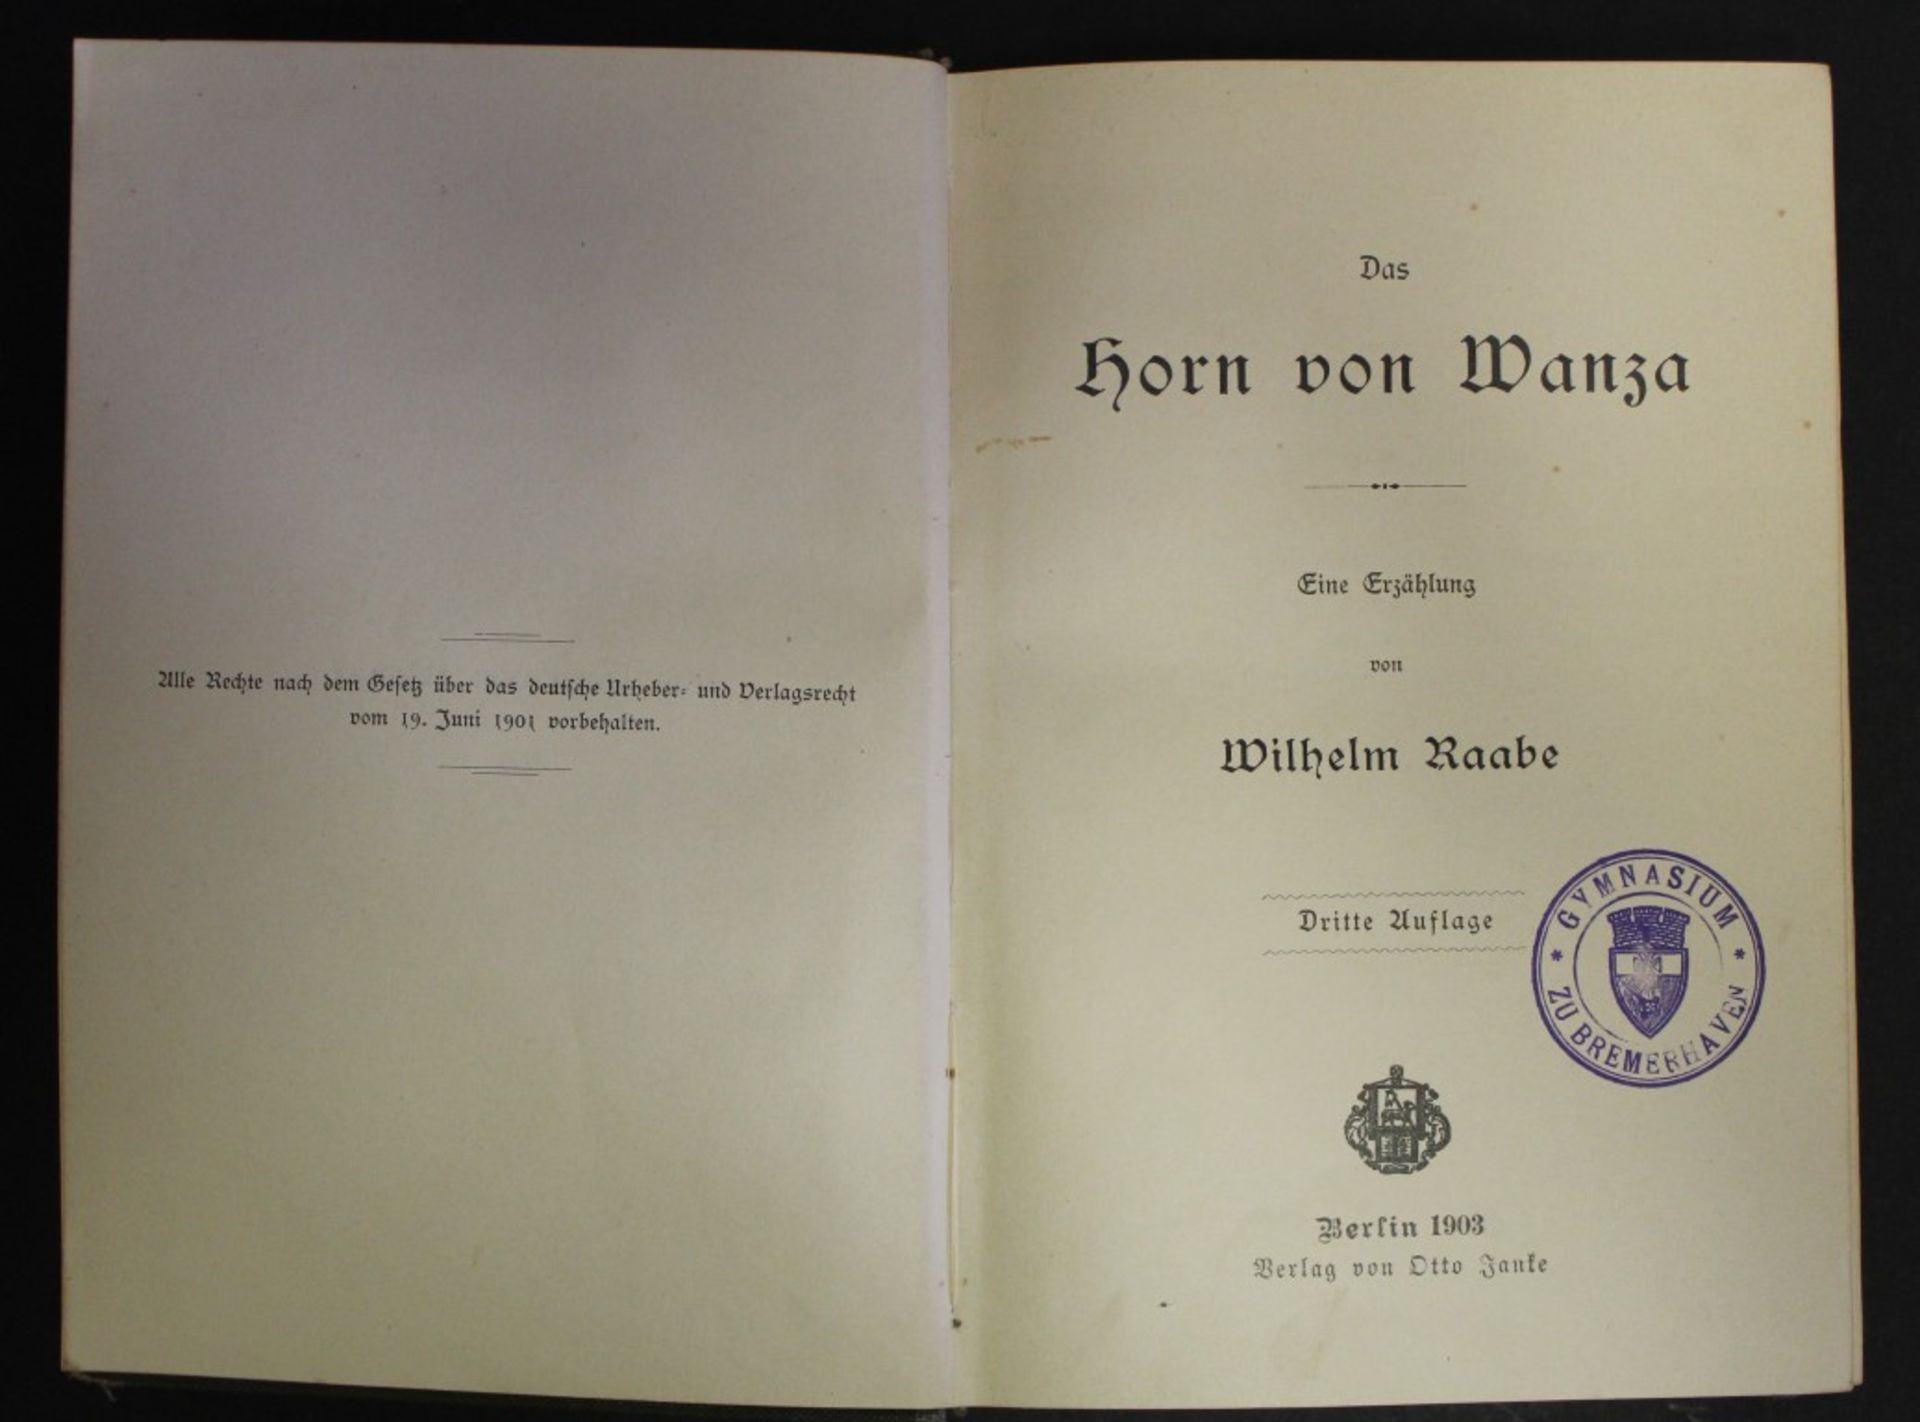 Das Horn von Wanza, Eine Erzählung von Wilhelm Raabe, Berlin 1903, dritte Auflage, Alters-u. - Image 2 of 4